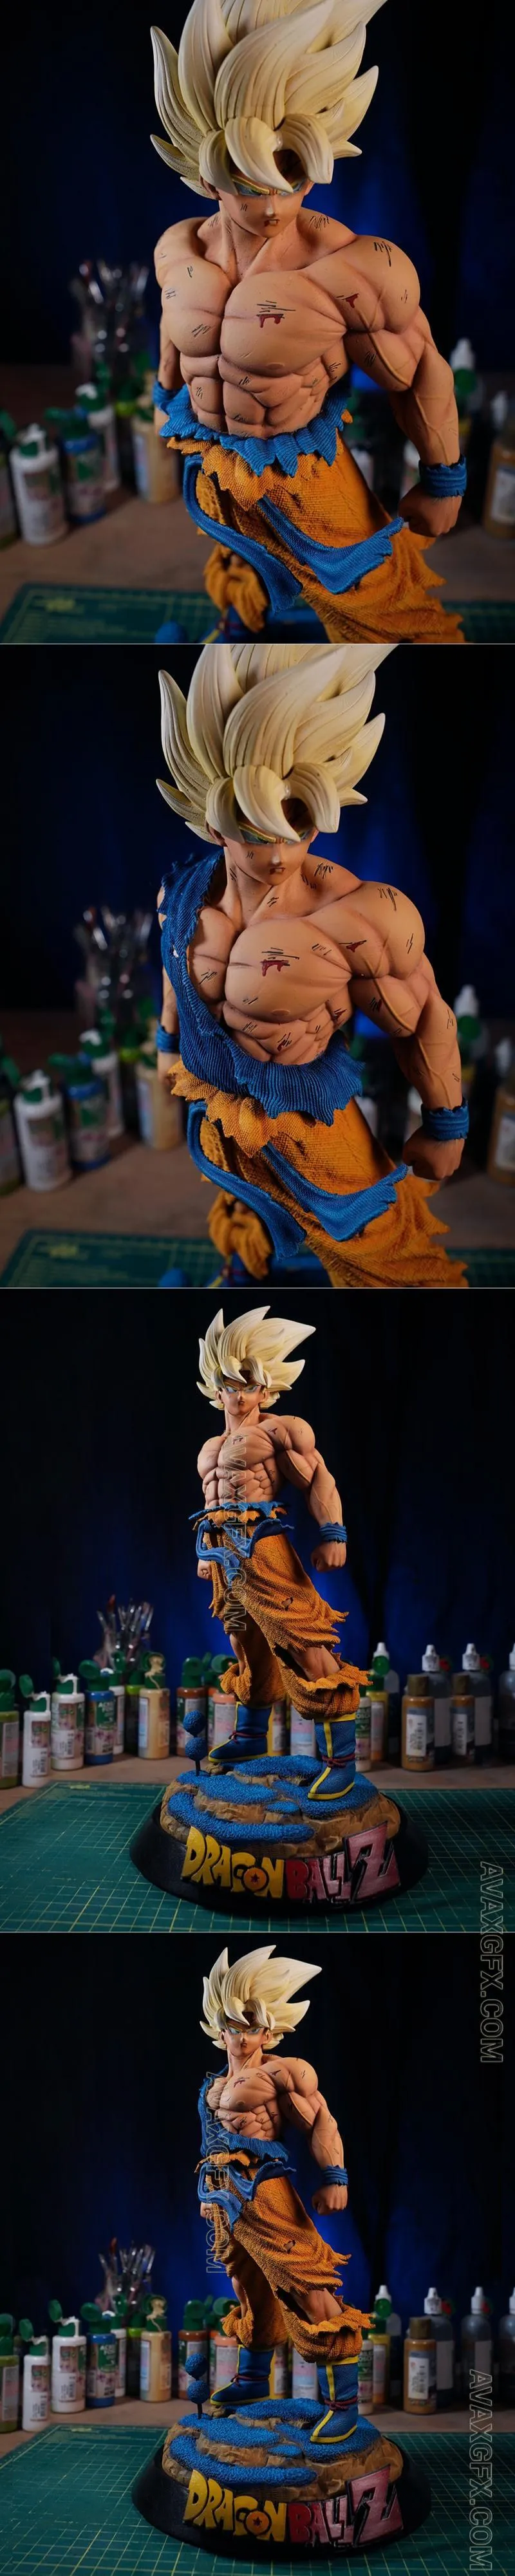 Super Saiyan Goku - STL 3D Model